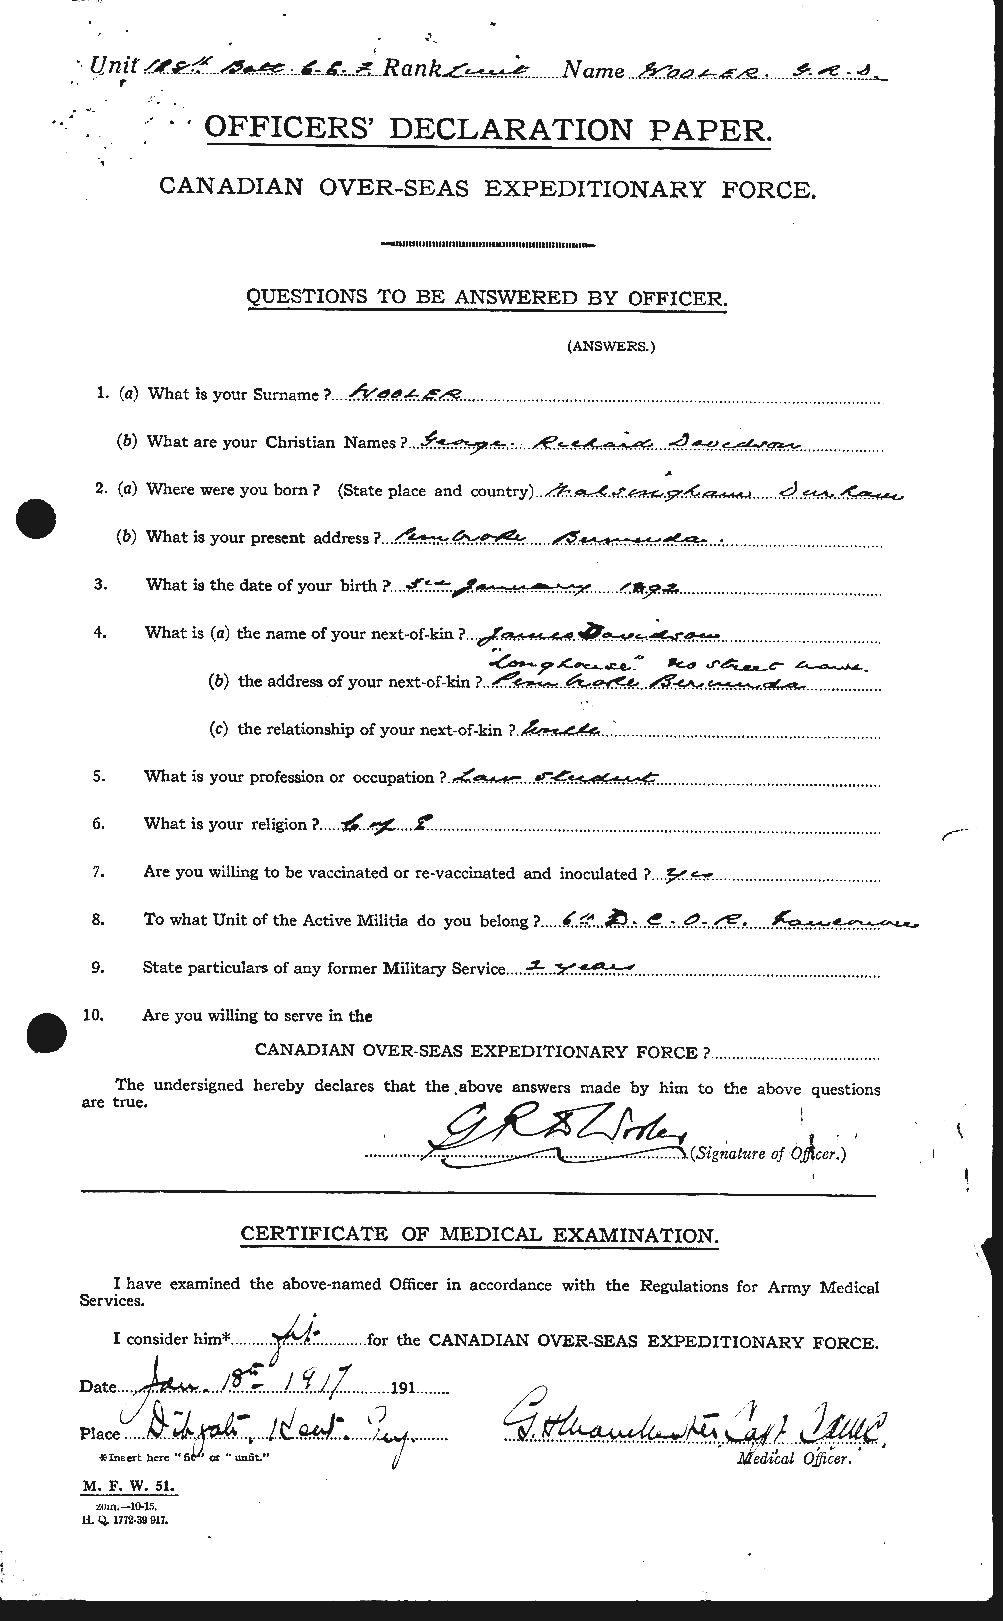 Dossiers du Personnel de la Première Guerre mondiale - CEC 685032a